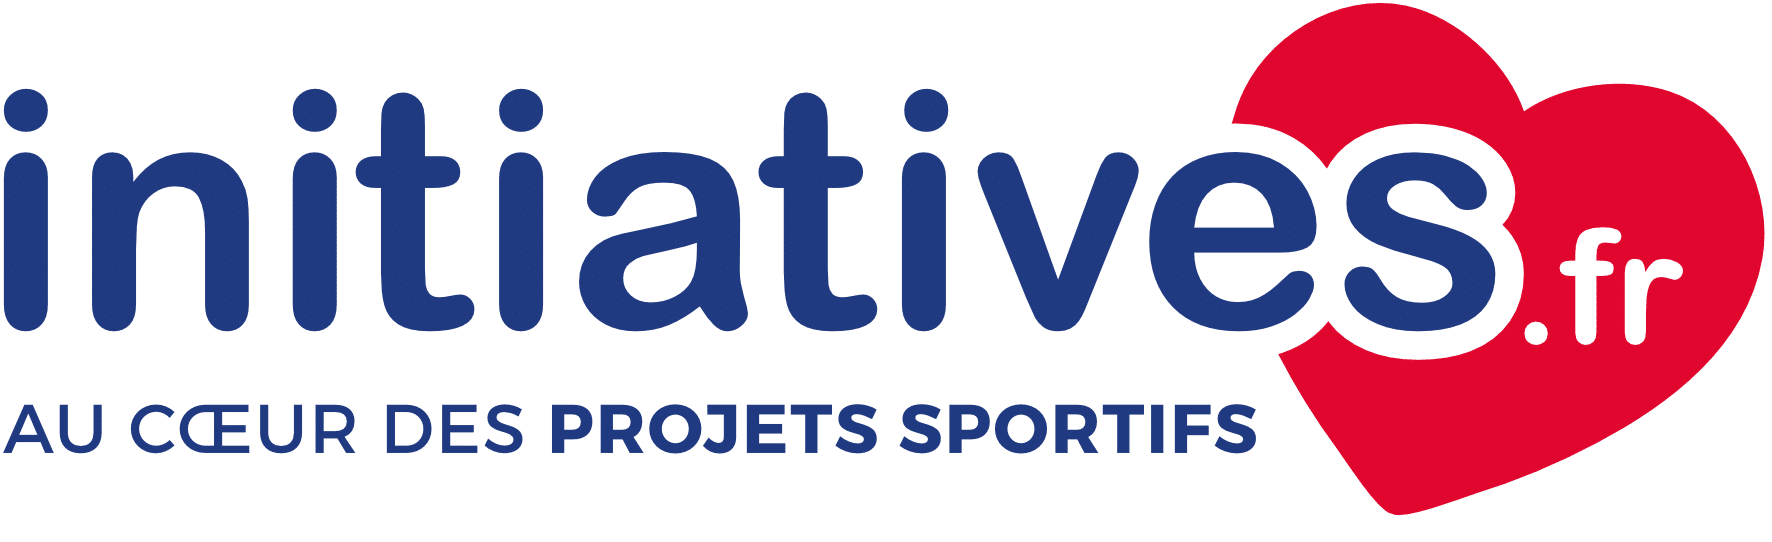 Logo initiatives.fr